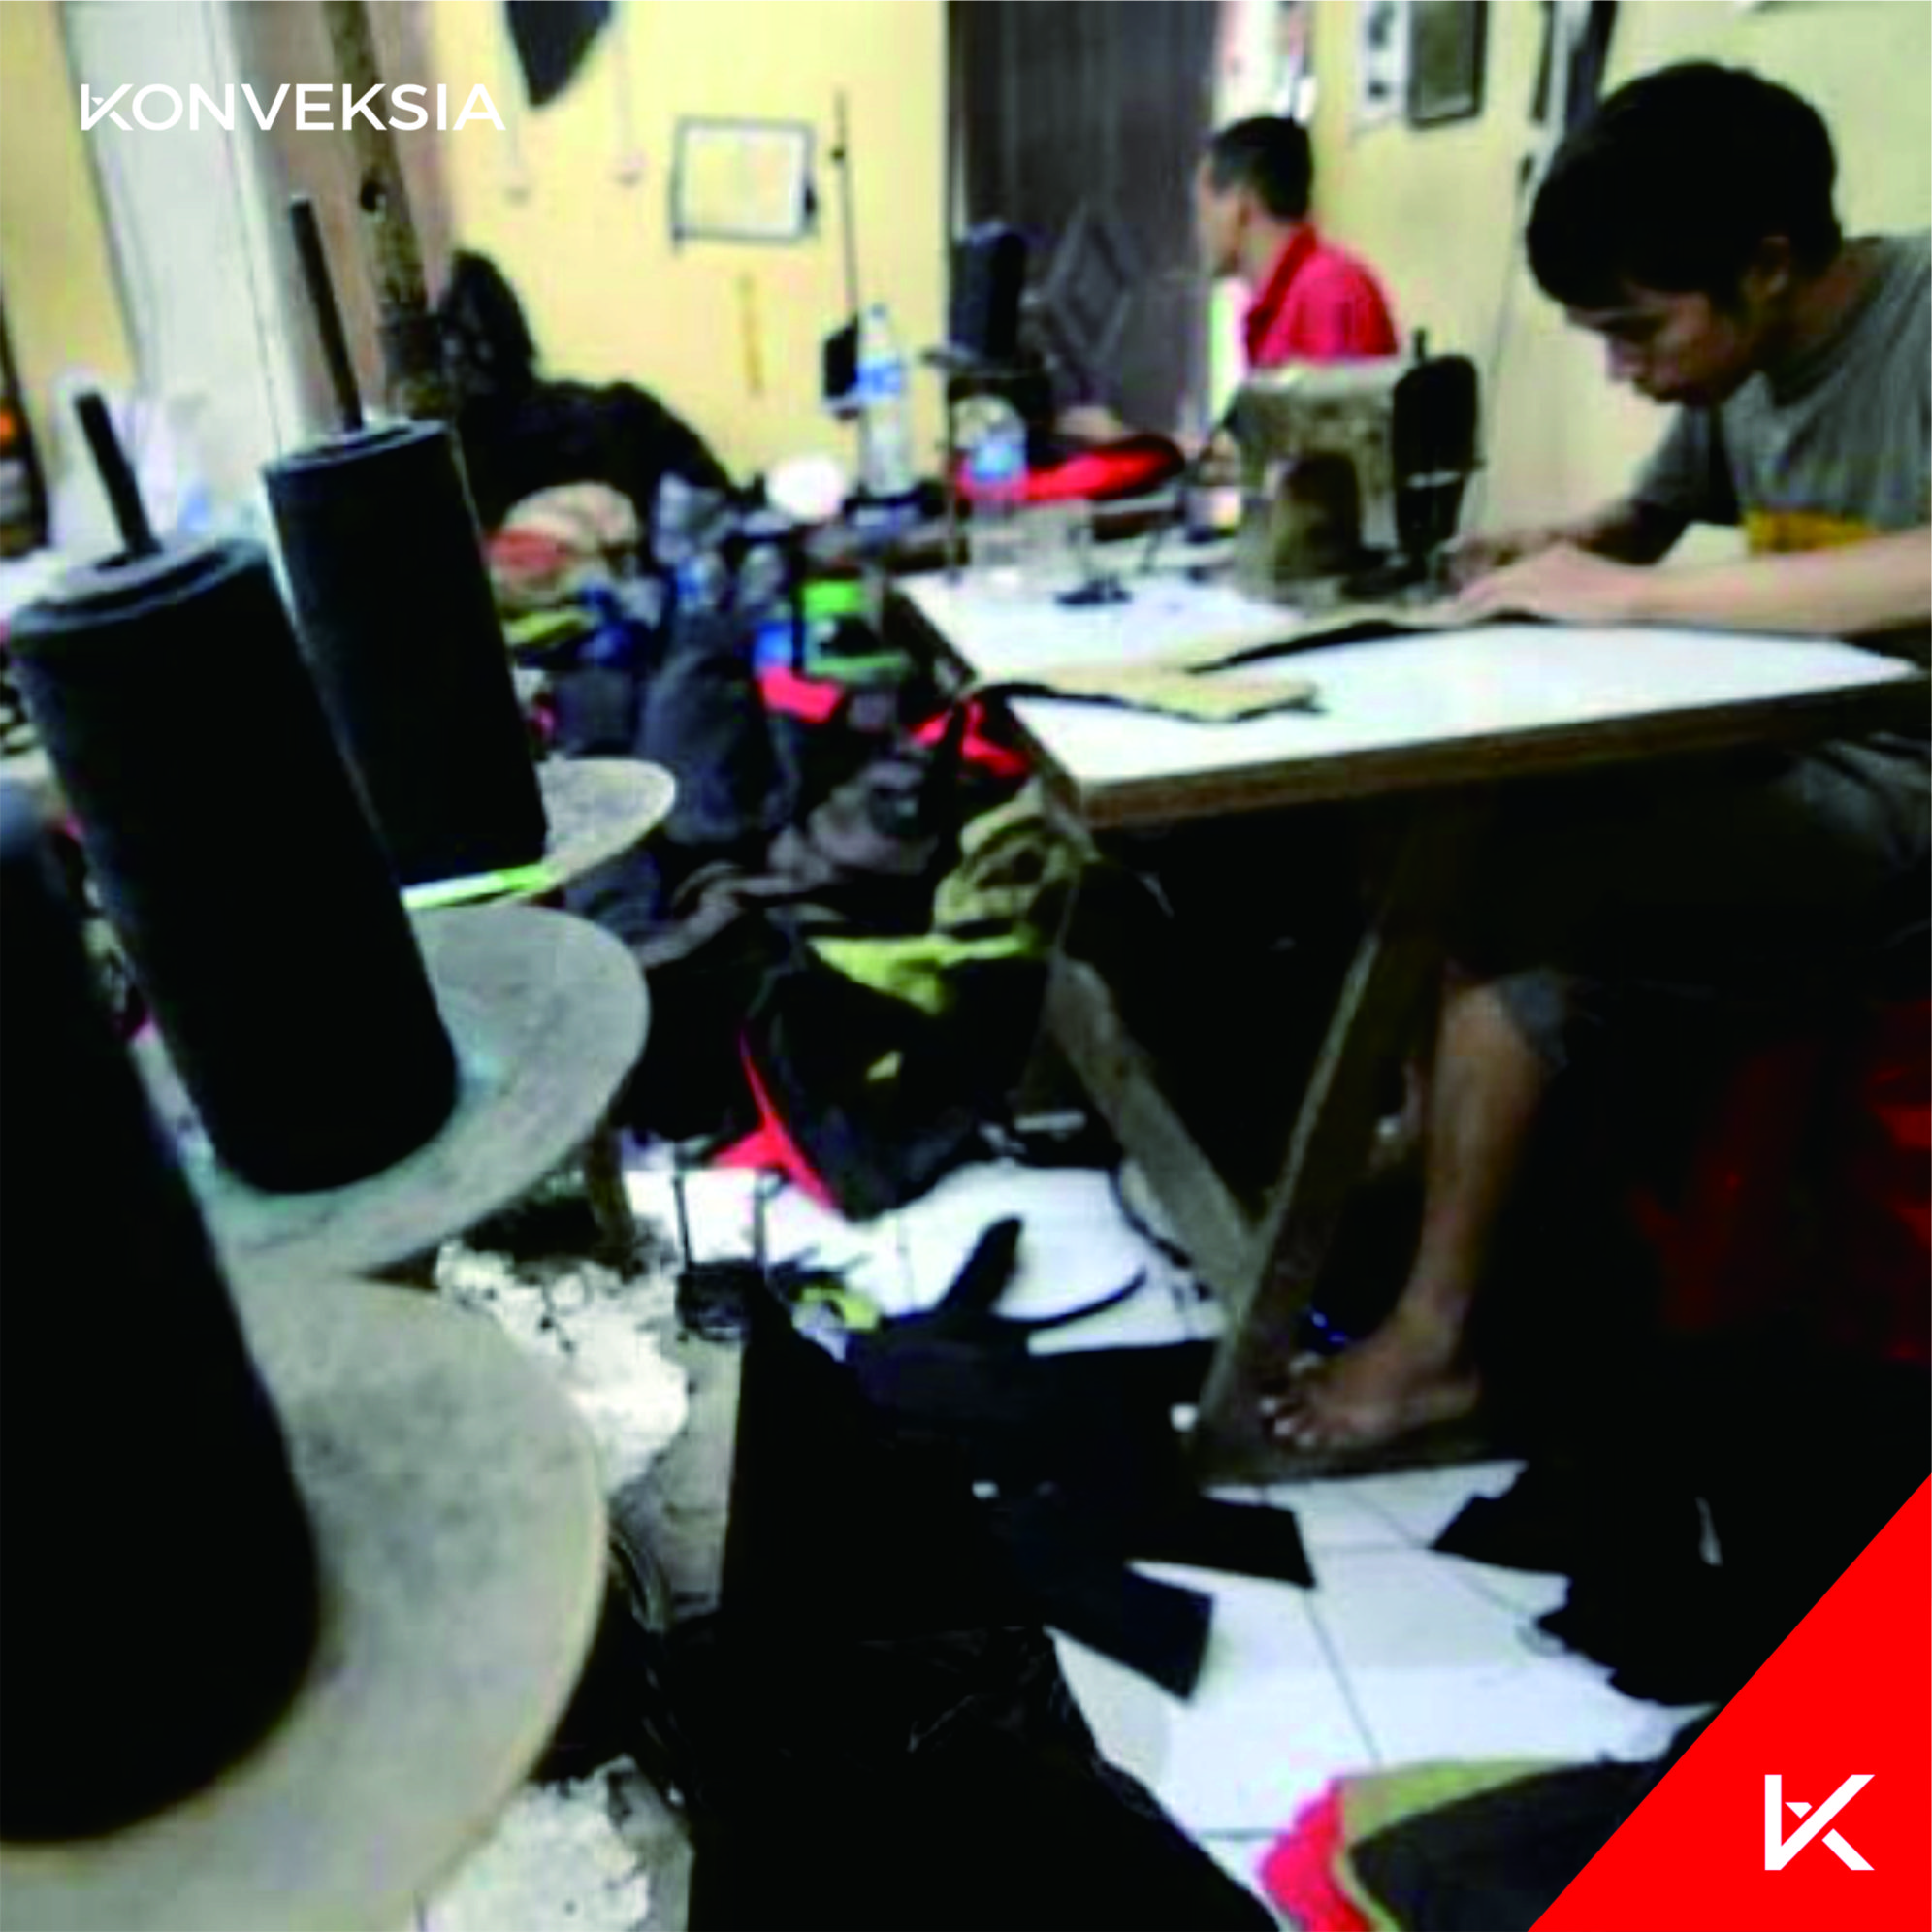 Jasa Konveksi tempat konveksi baju di bandung - 9 1 - Tempat Konveksi Baju Termurah dan Berkualitas di Bandung